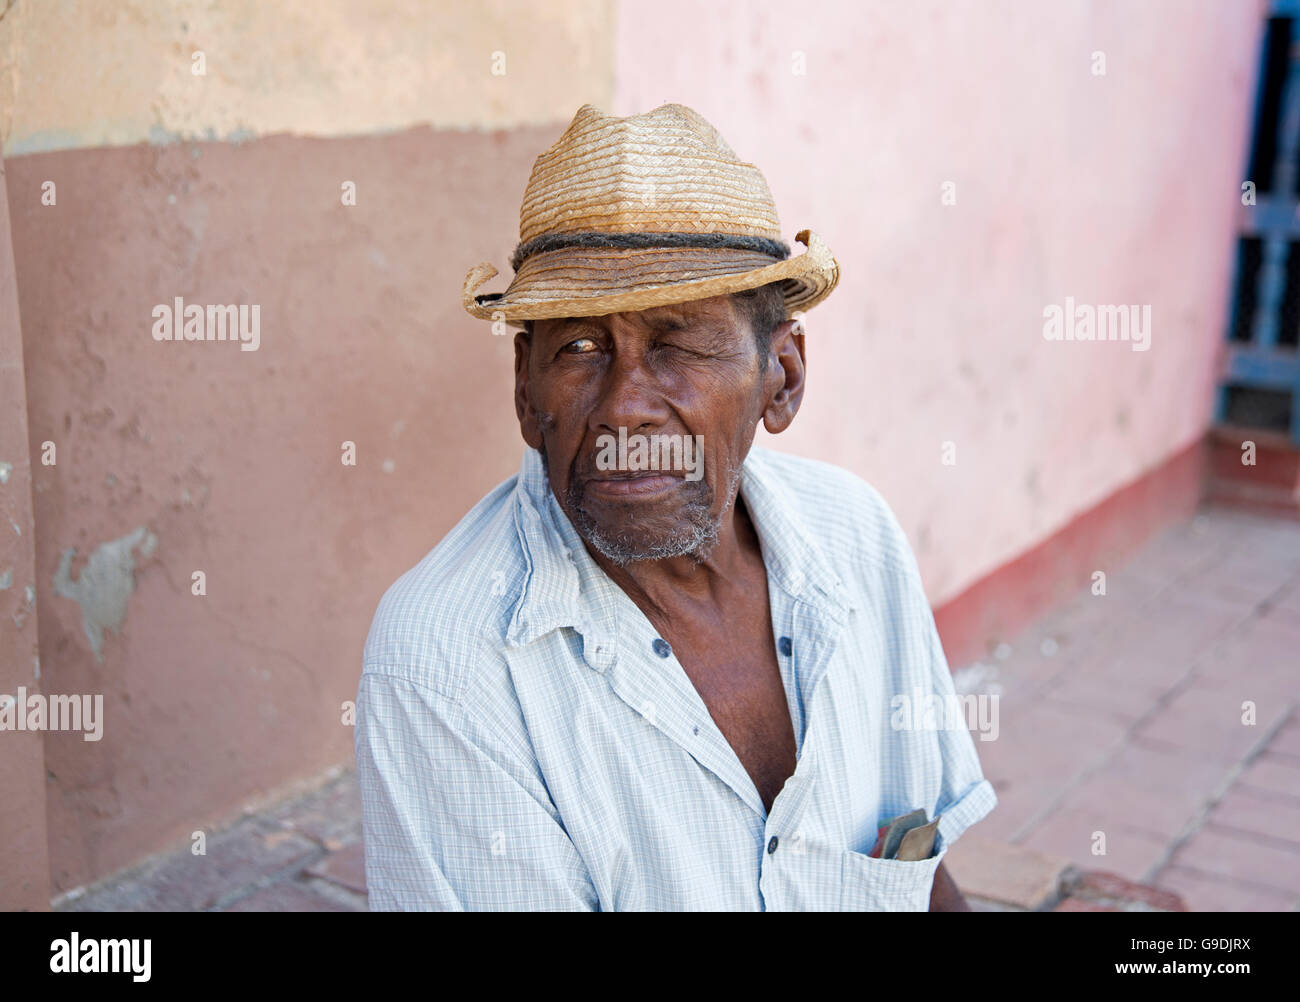 Cappello cubano immagini e fotografie stock ad alta risoluzione - Alamy